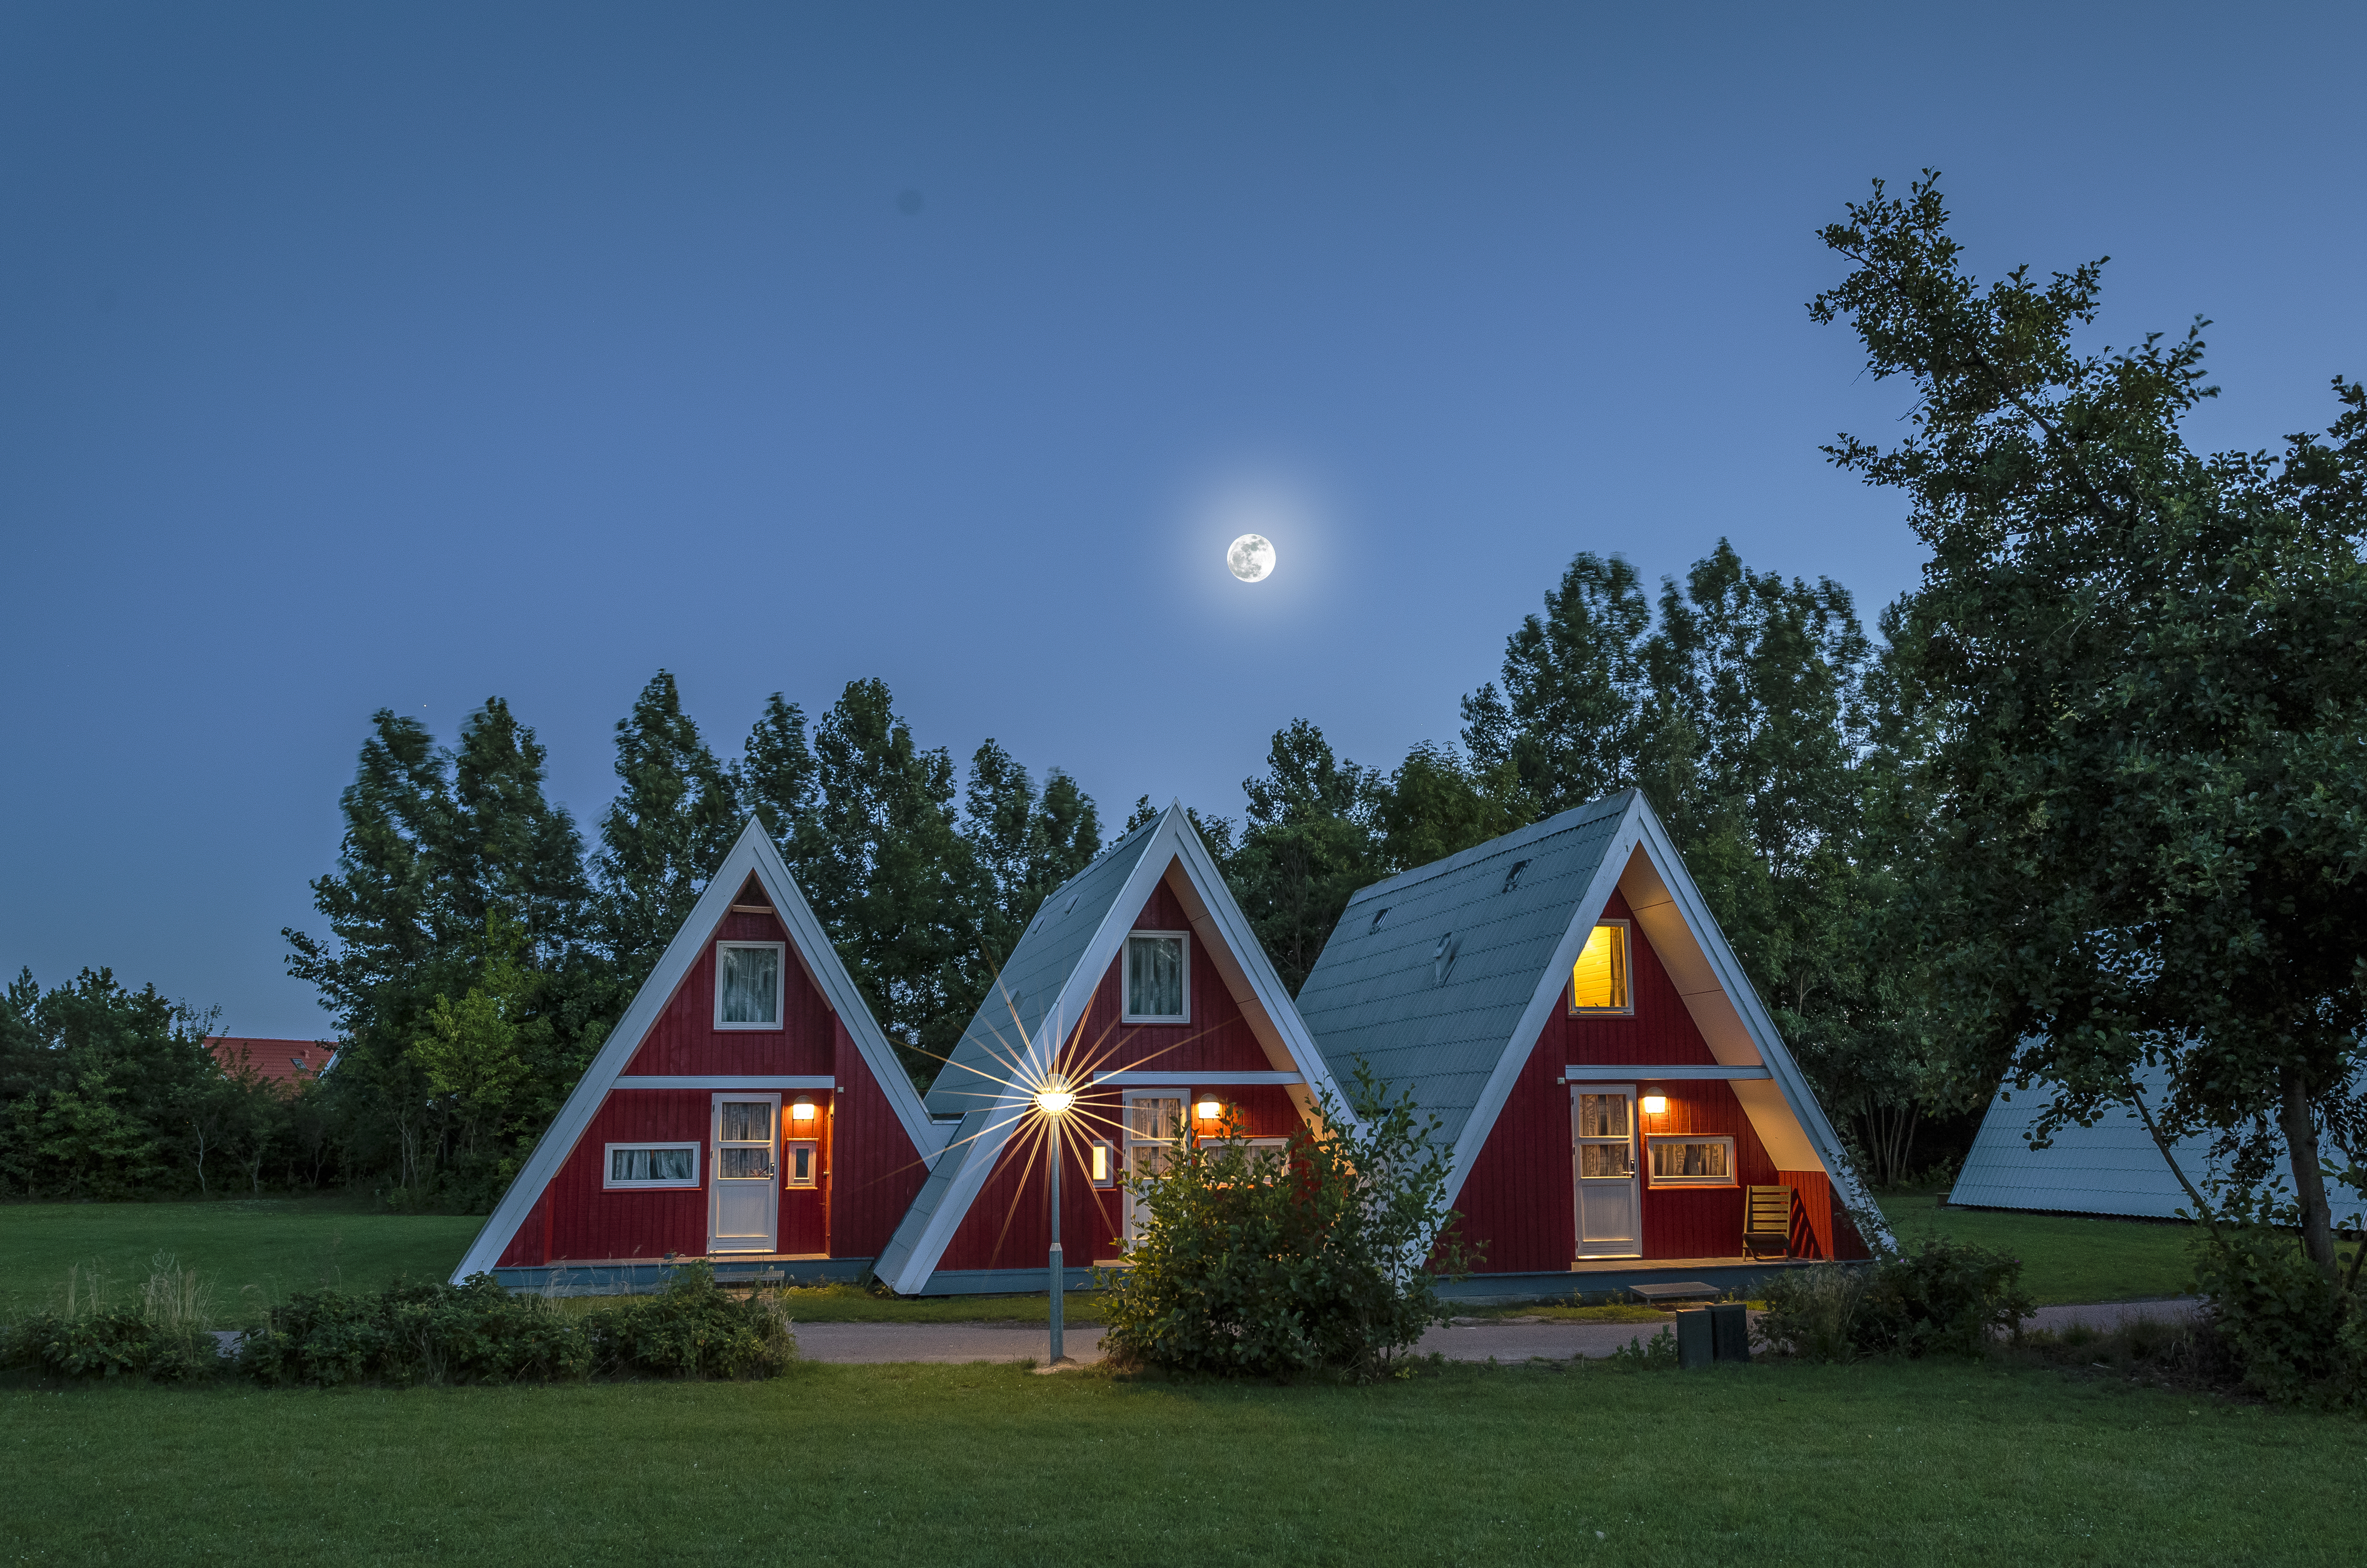 Zastaki.com - Необычные треугольные дома под ночным небом, Германия